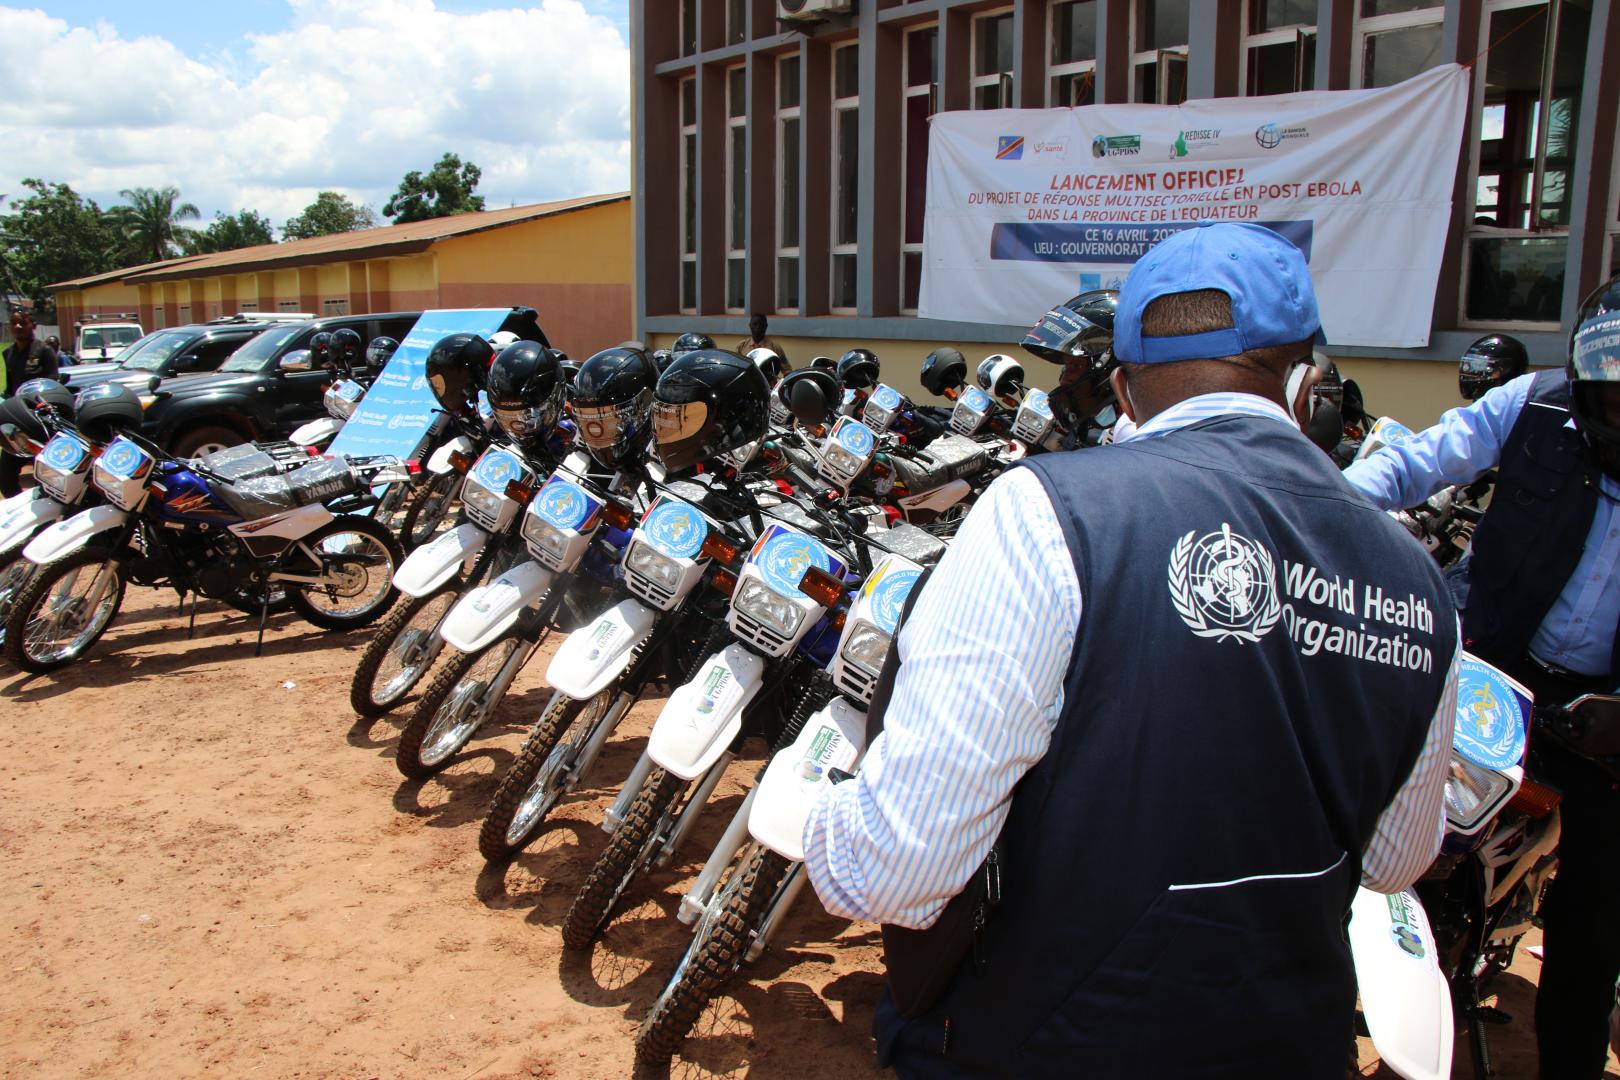 Une vue partielle de 68 motos neuves remises par l'OMS à Mbandaka pour renforcer les activités de surveillance épidémiologique dans un effort pour soutenir la détection précoce des épidémies, permettant la préparation et la réponse efficace